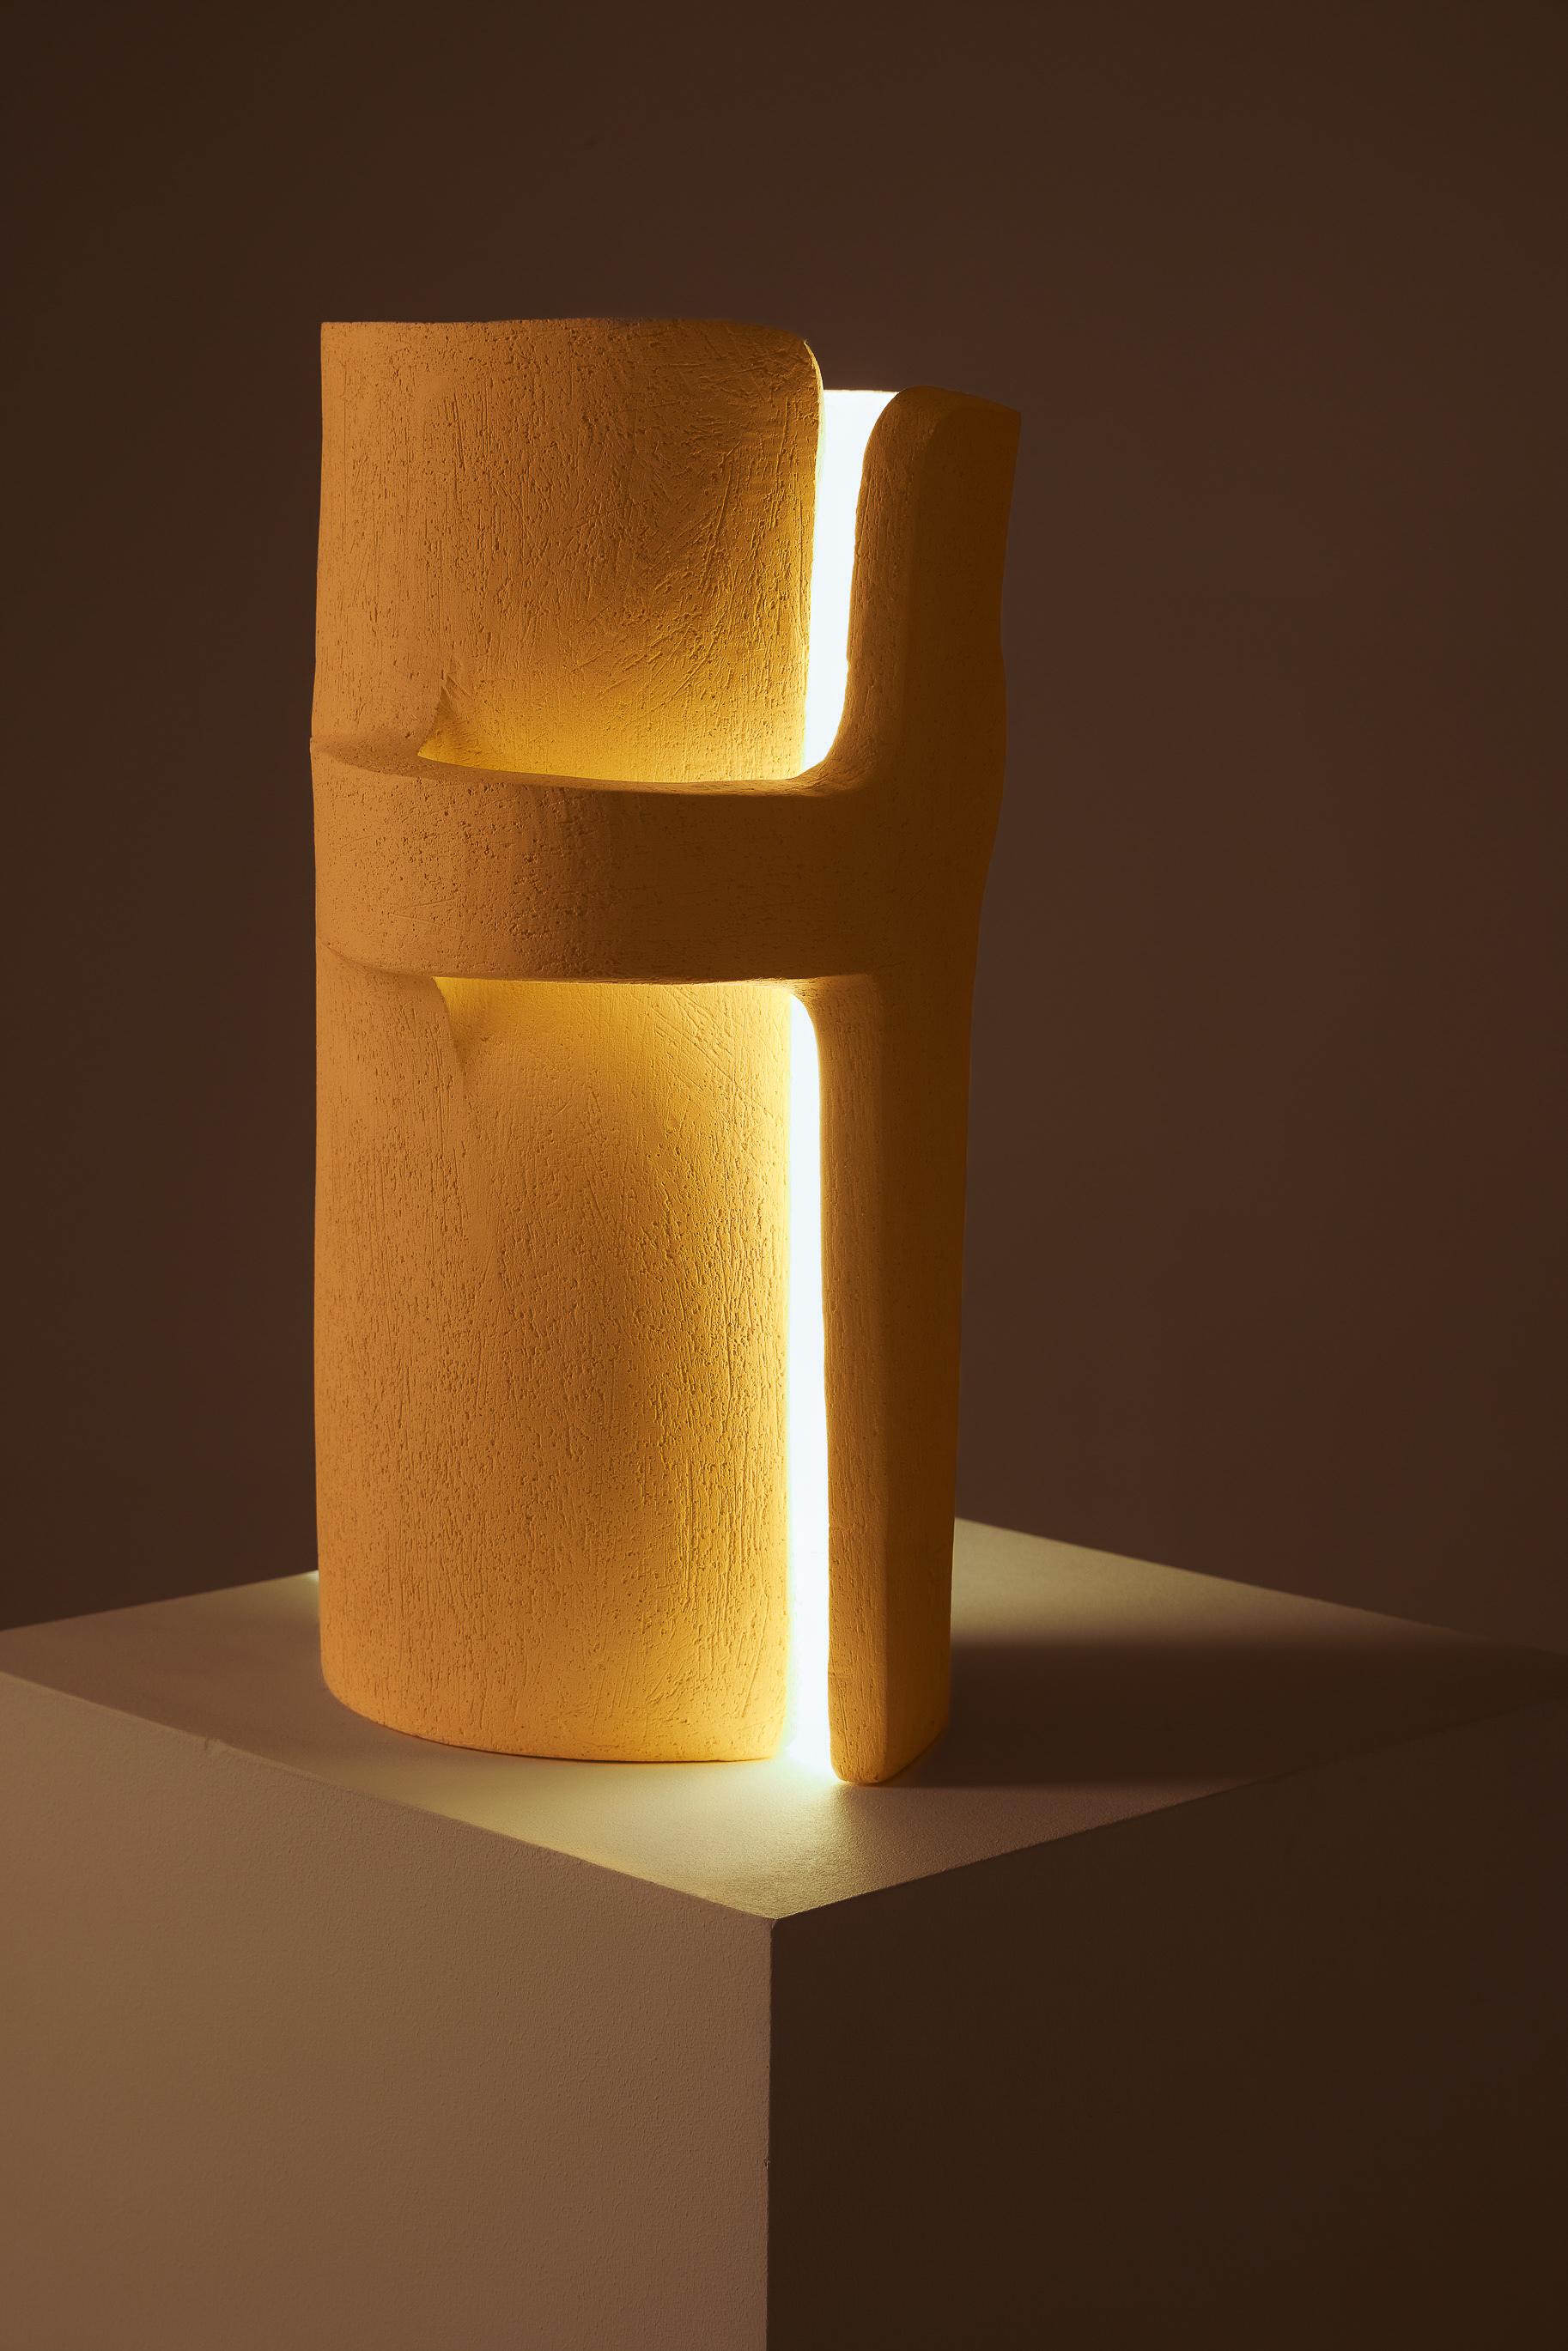  Lampe fabriquée en pierre blanche par la designer et sculptrice ukrainienne Kseniya Kravtsova. La lampe représente deux figures entrelacées. Une pièce contemporaine unique. Excellent état. Son travail peut être comparé à celui d'Albert